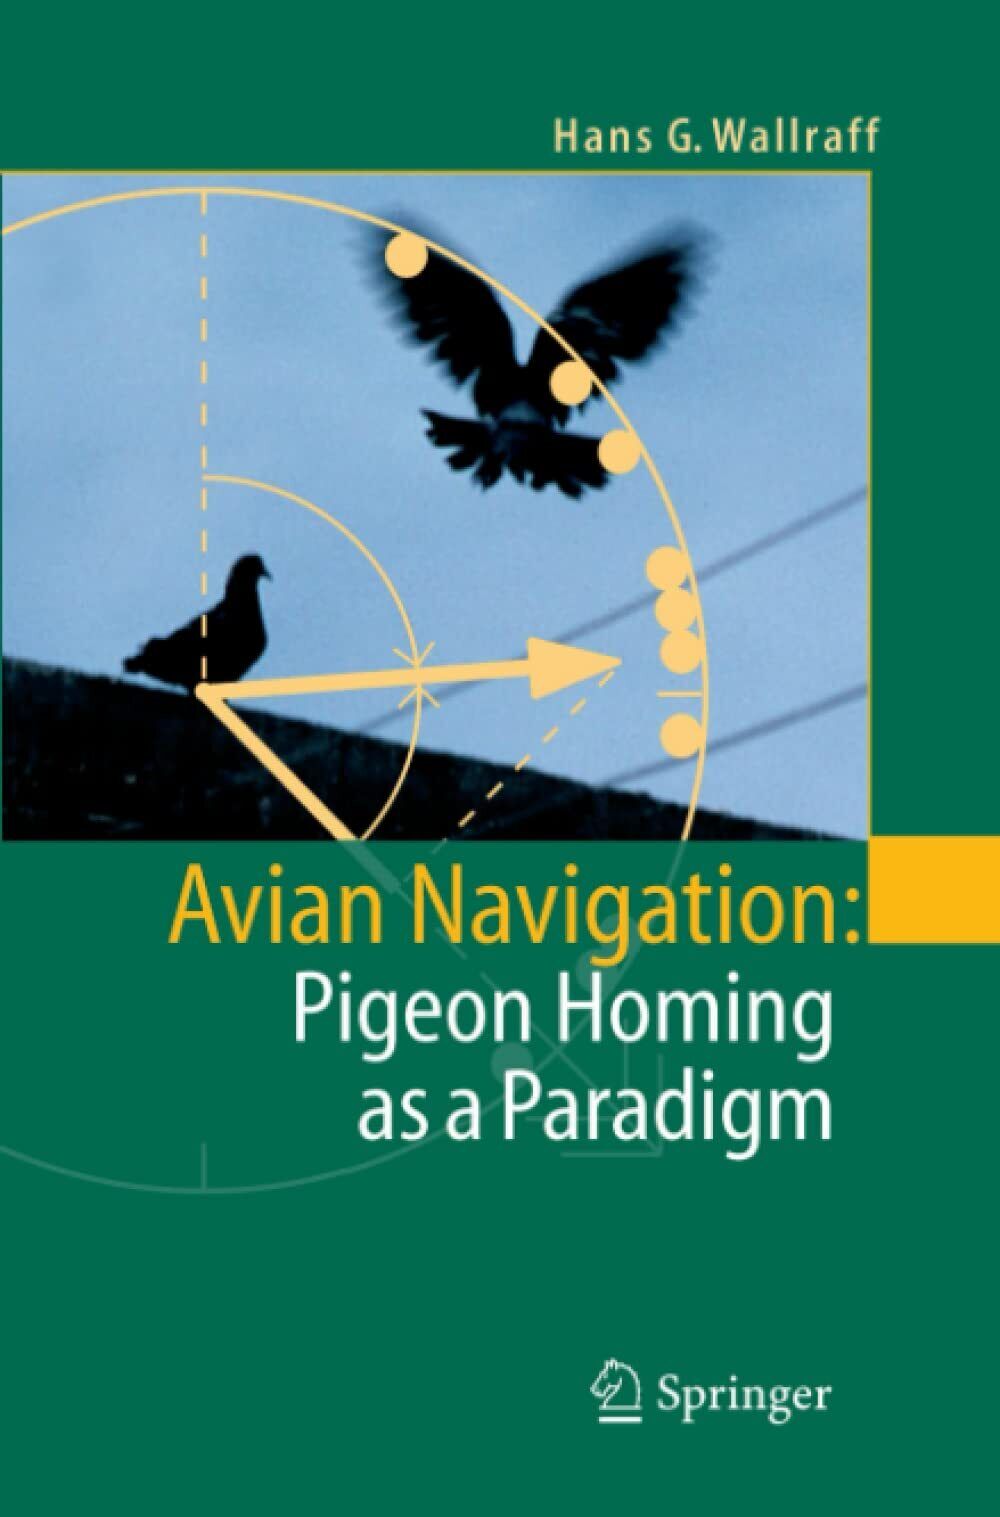 Avian Navigation - Hans G. Wallraff - Springer, 2010